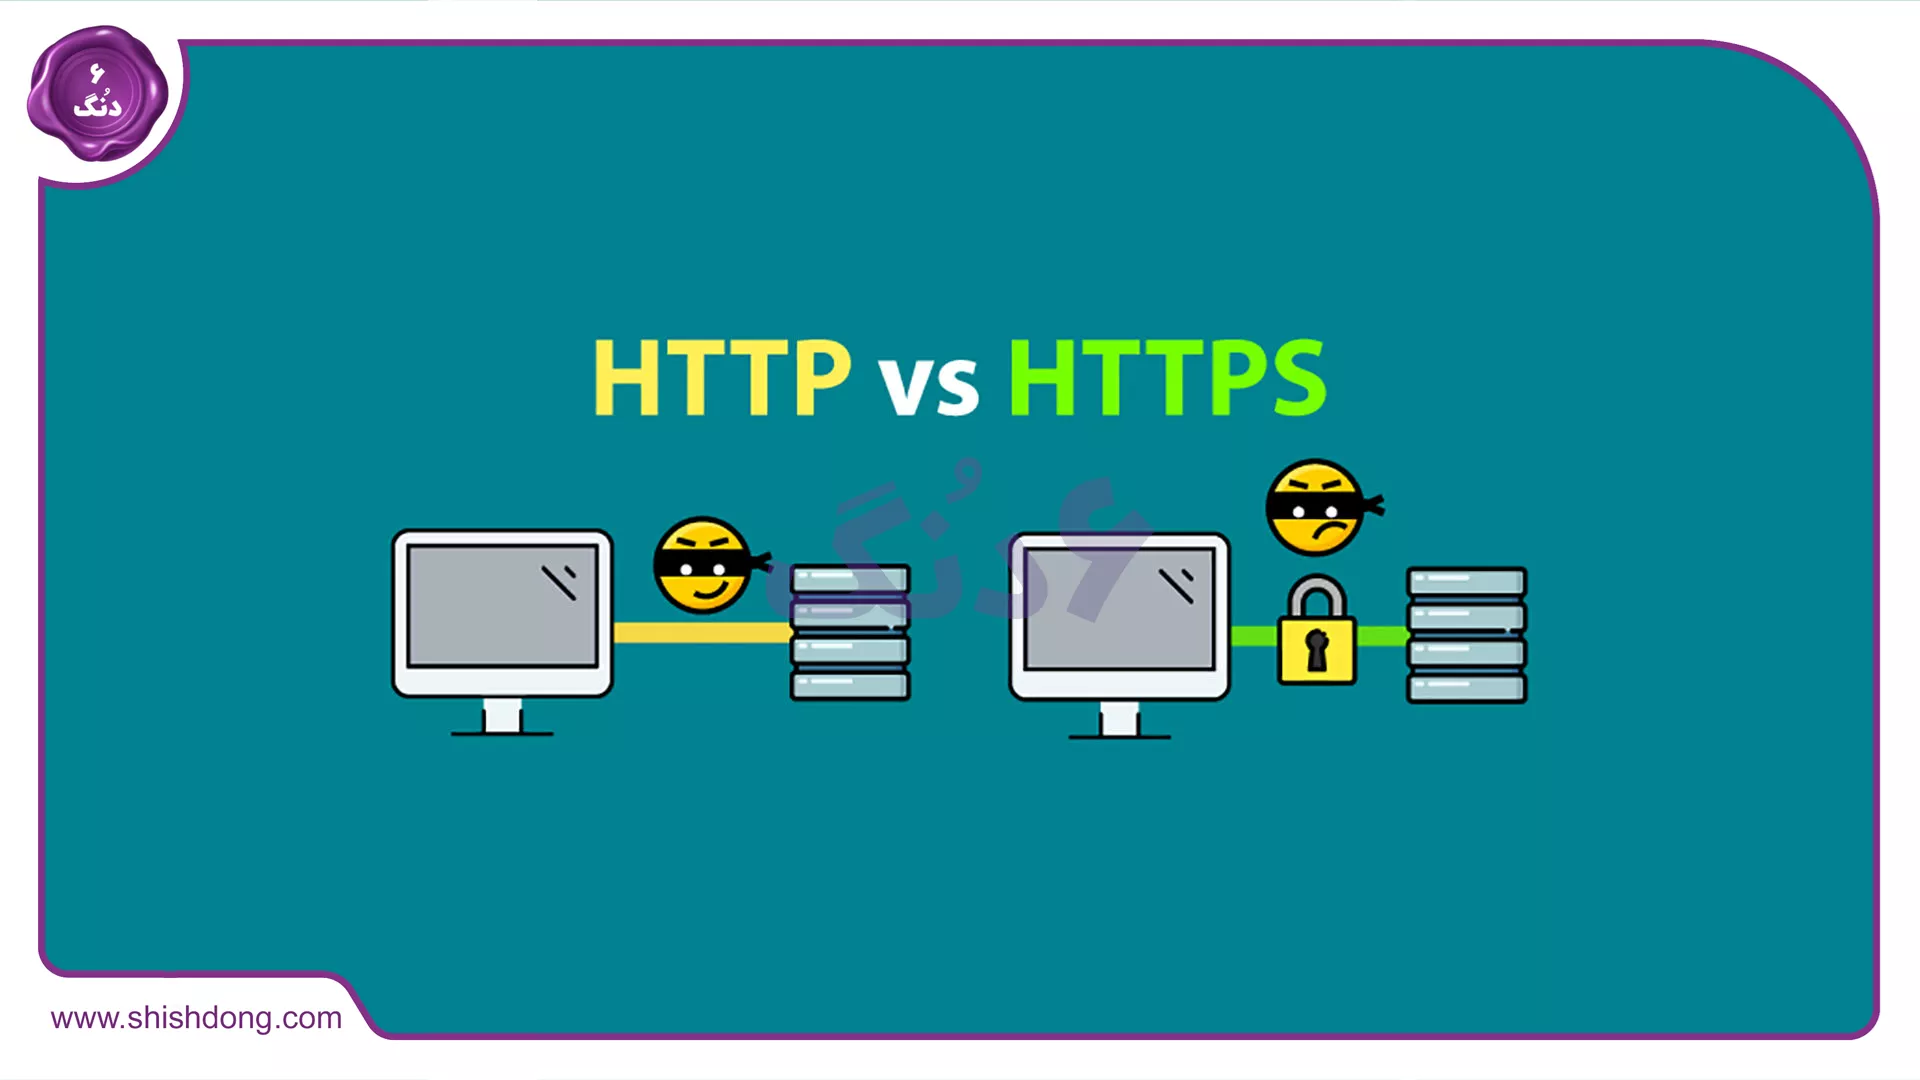 پروتکل امنیتی HTTPS